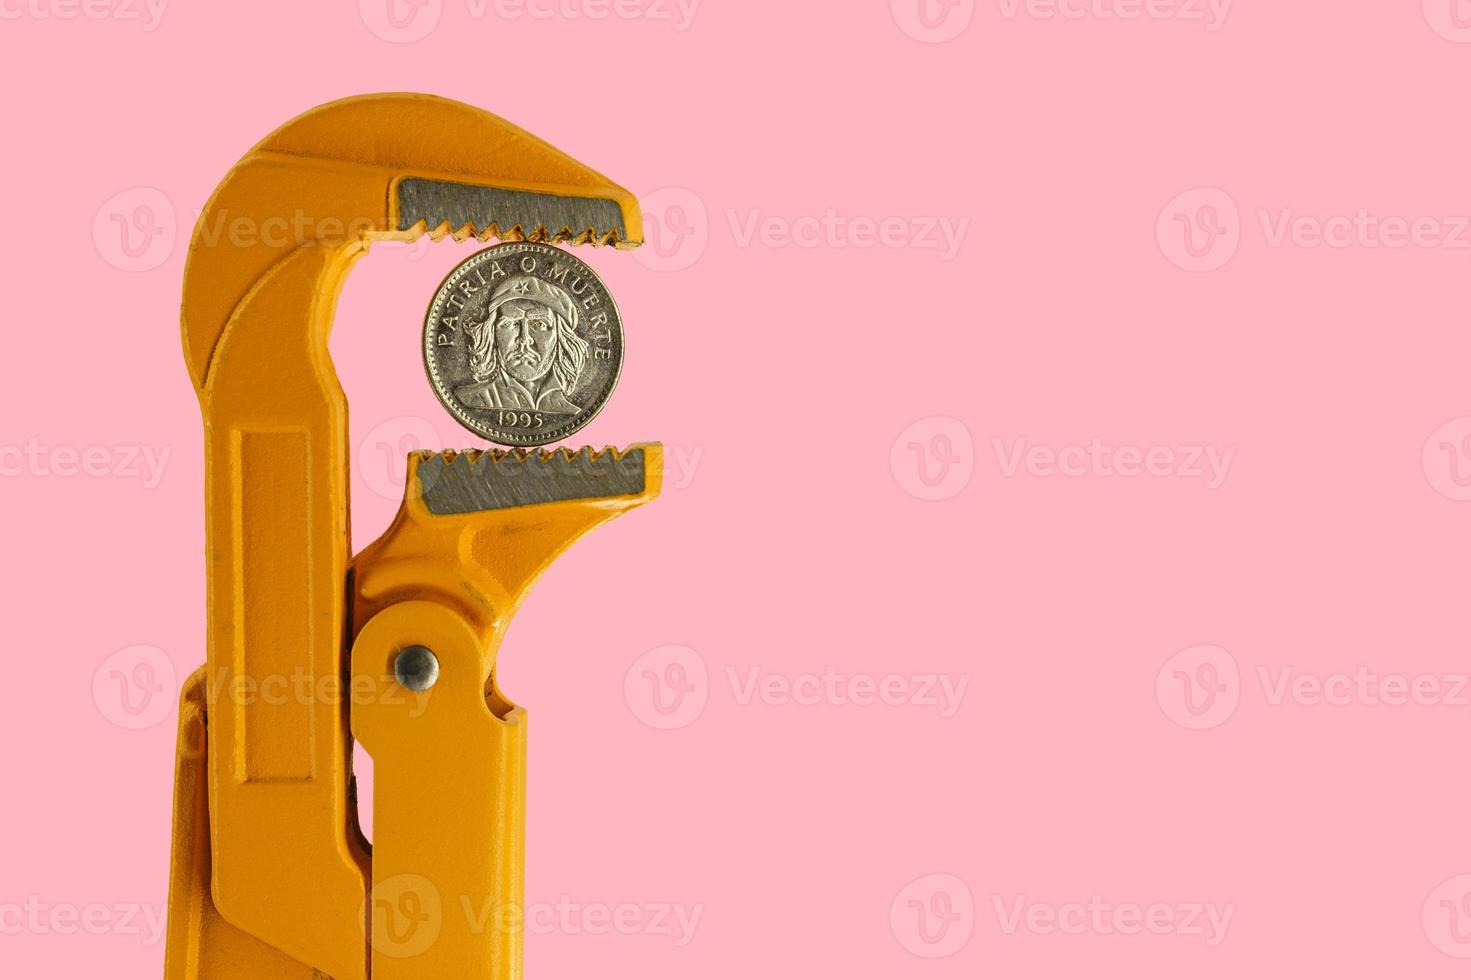 Pièce de trois pesos cubains tenue dans une clé de plombier orange sur fond rose photo